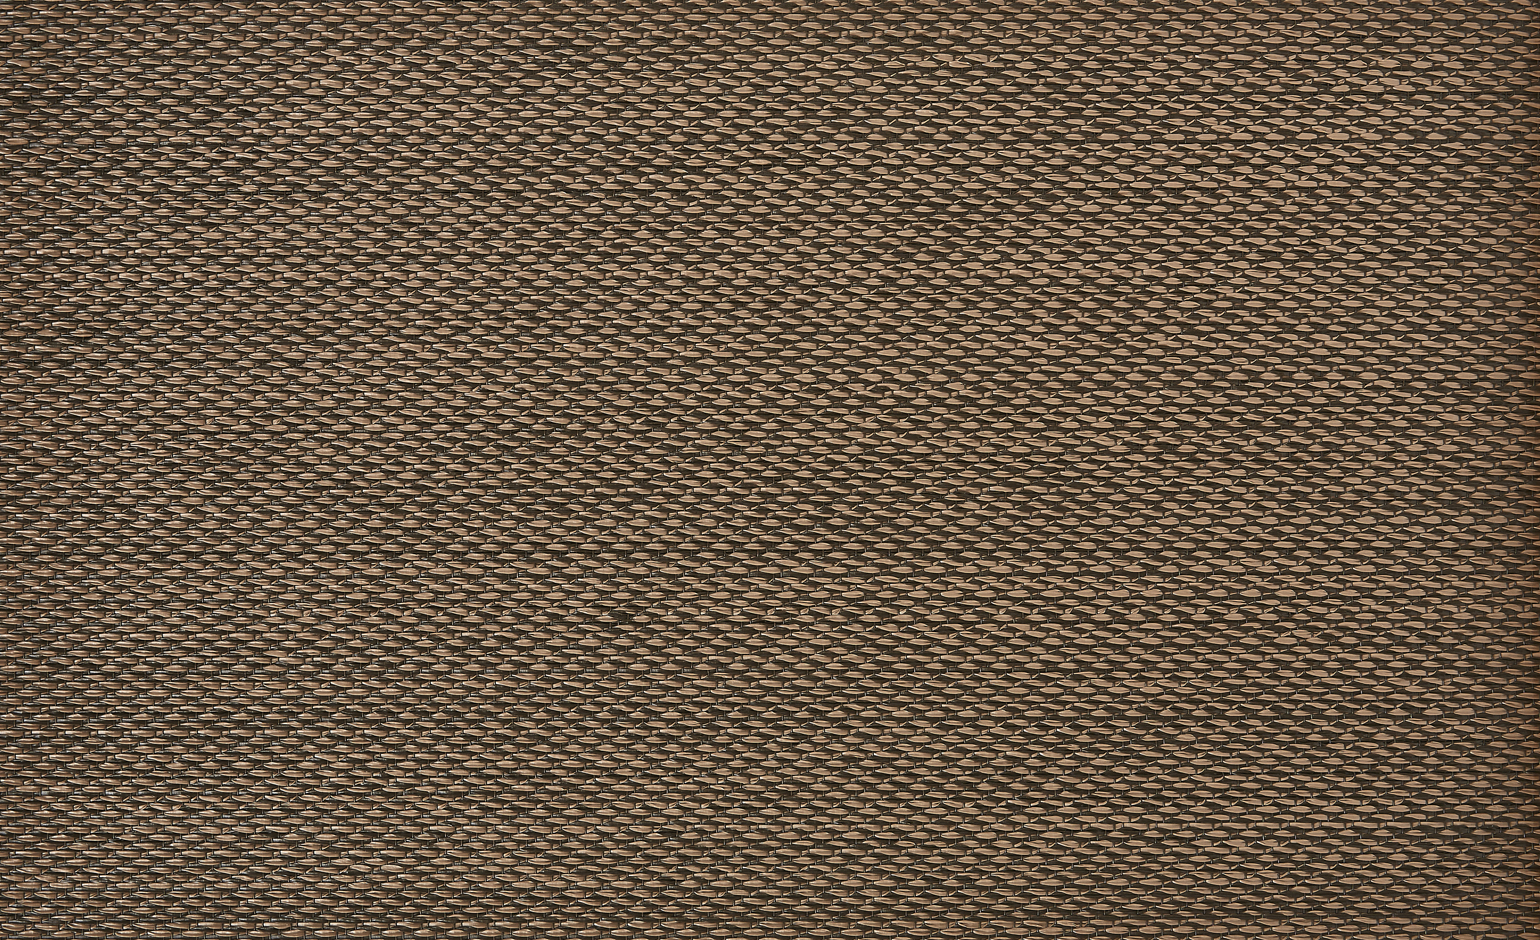 Sol vinyle rouleau NATURELOOK NOISETTE, Textile fibre tissée, noisette, rouleau 2.00 m